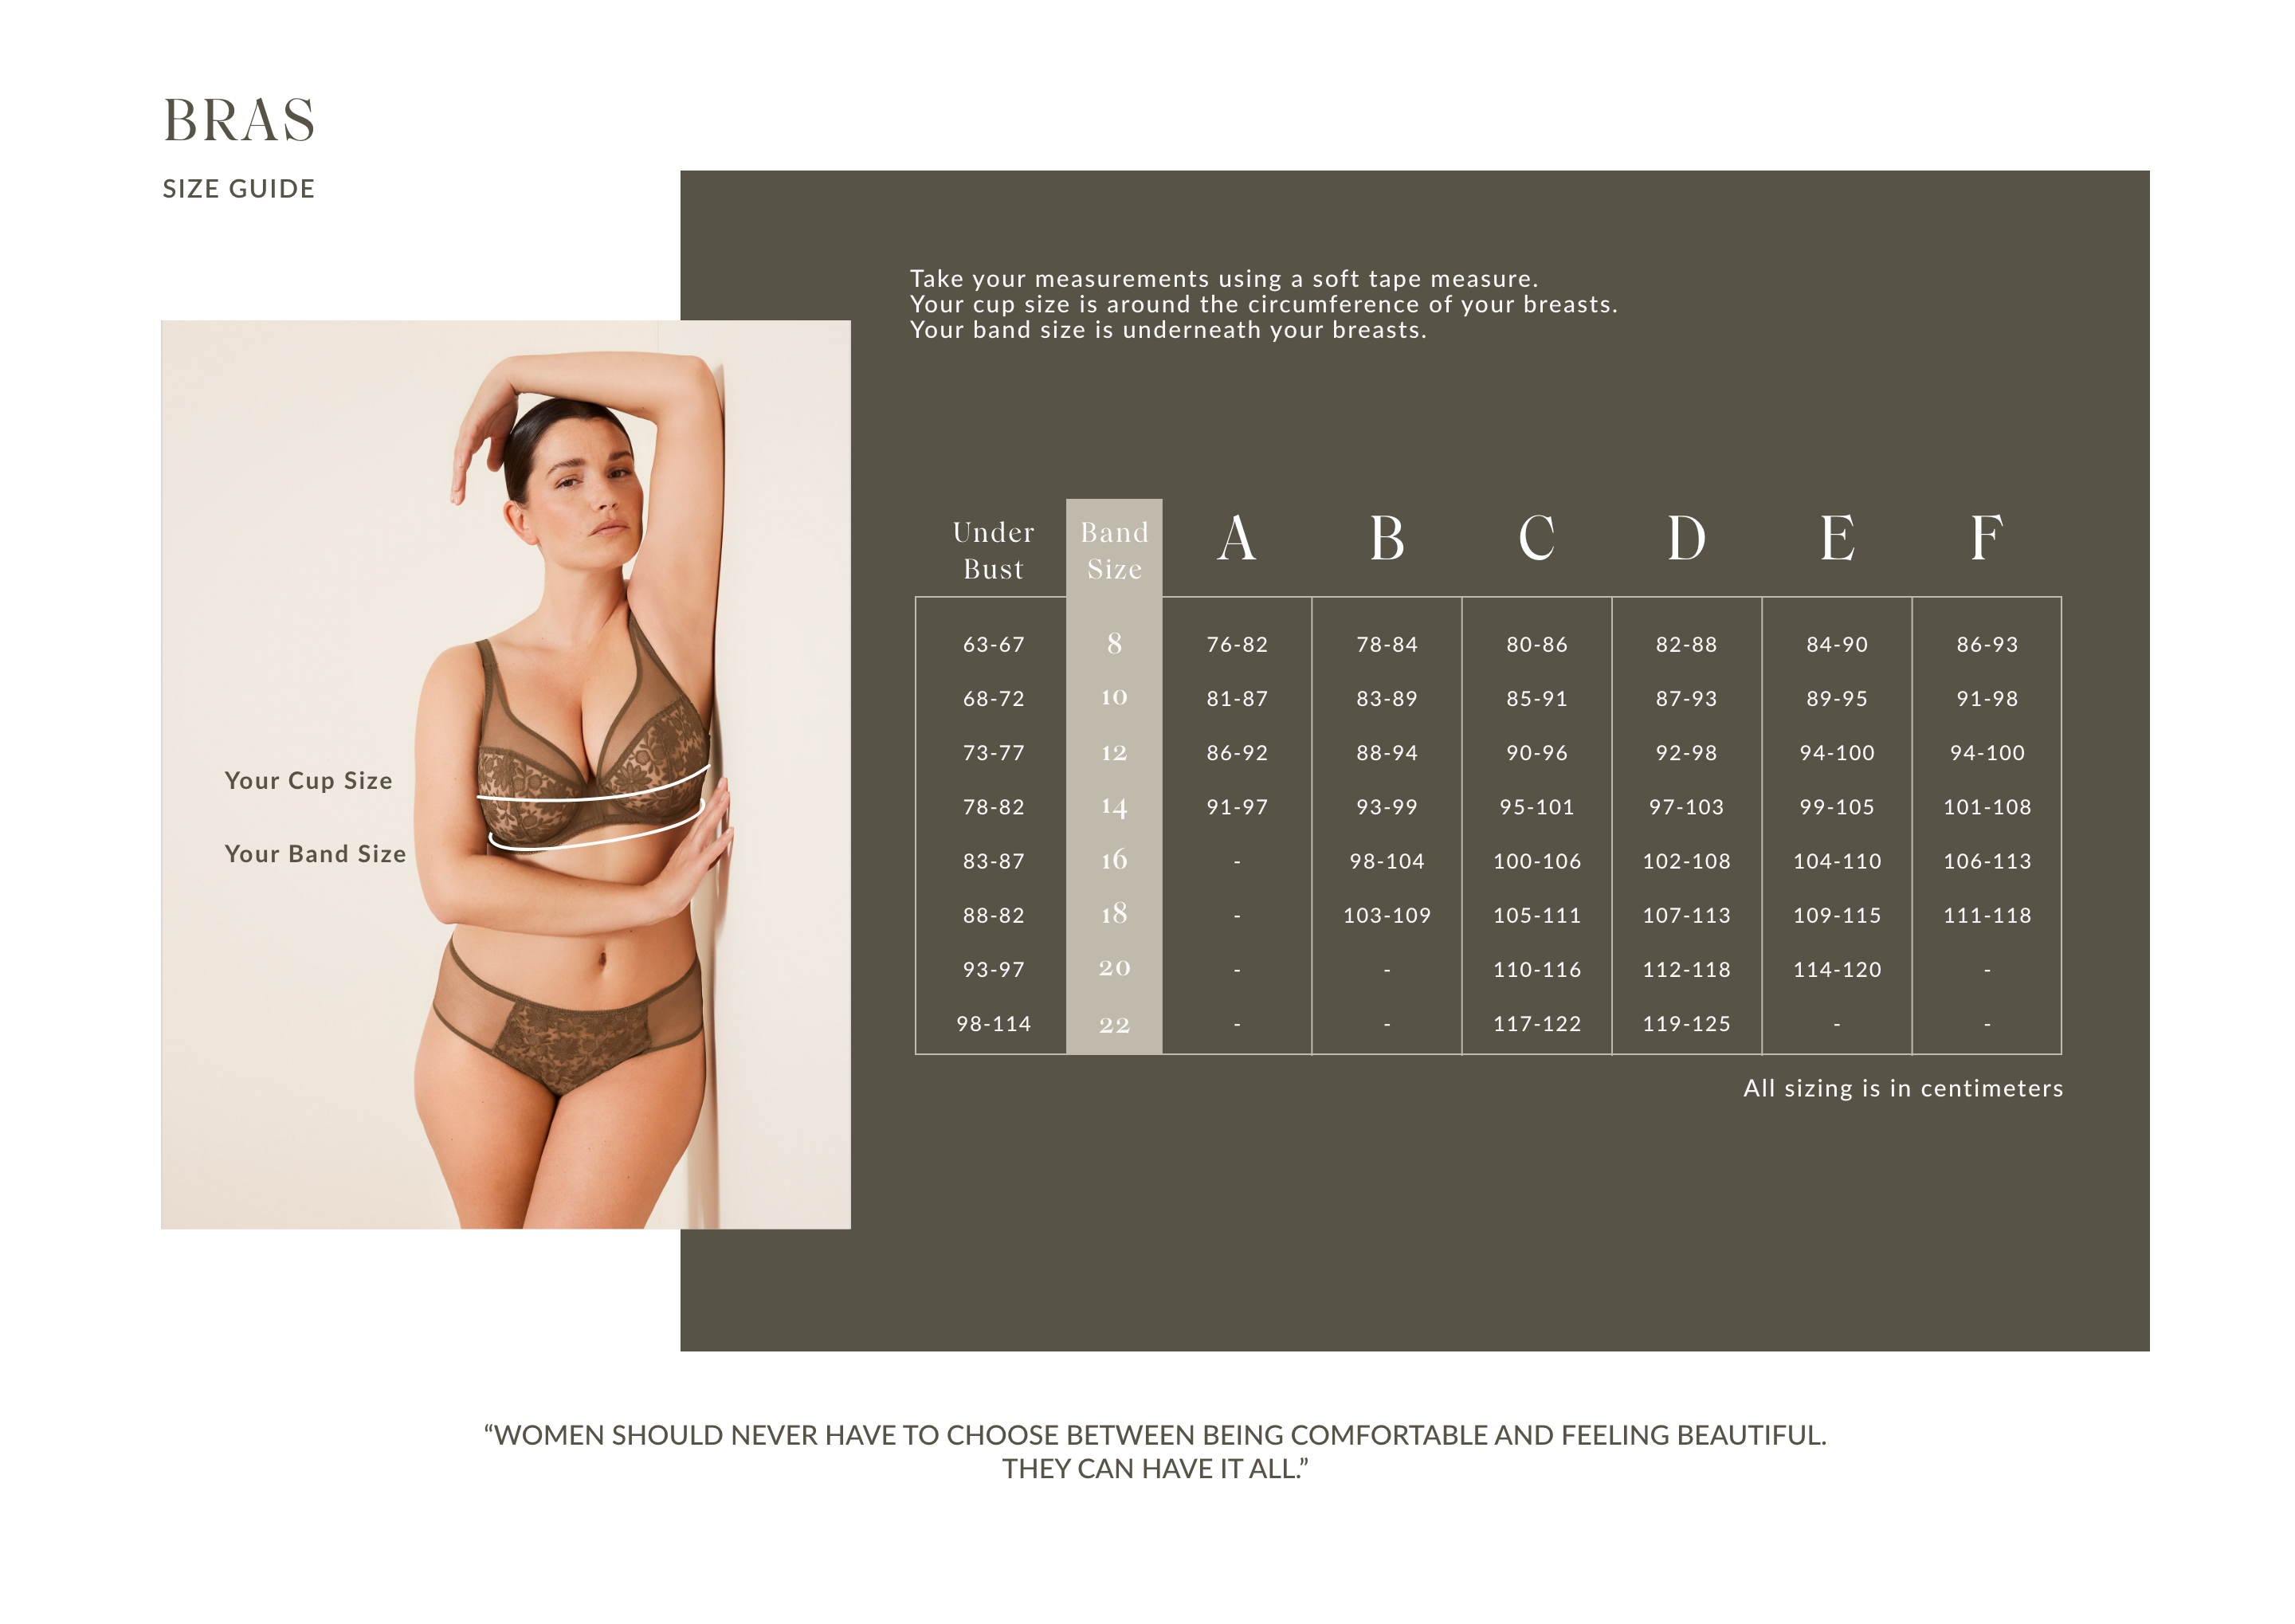 Basic Size Chart for Women's Lingerie